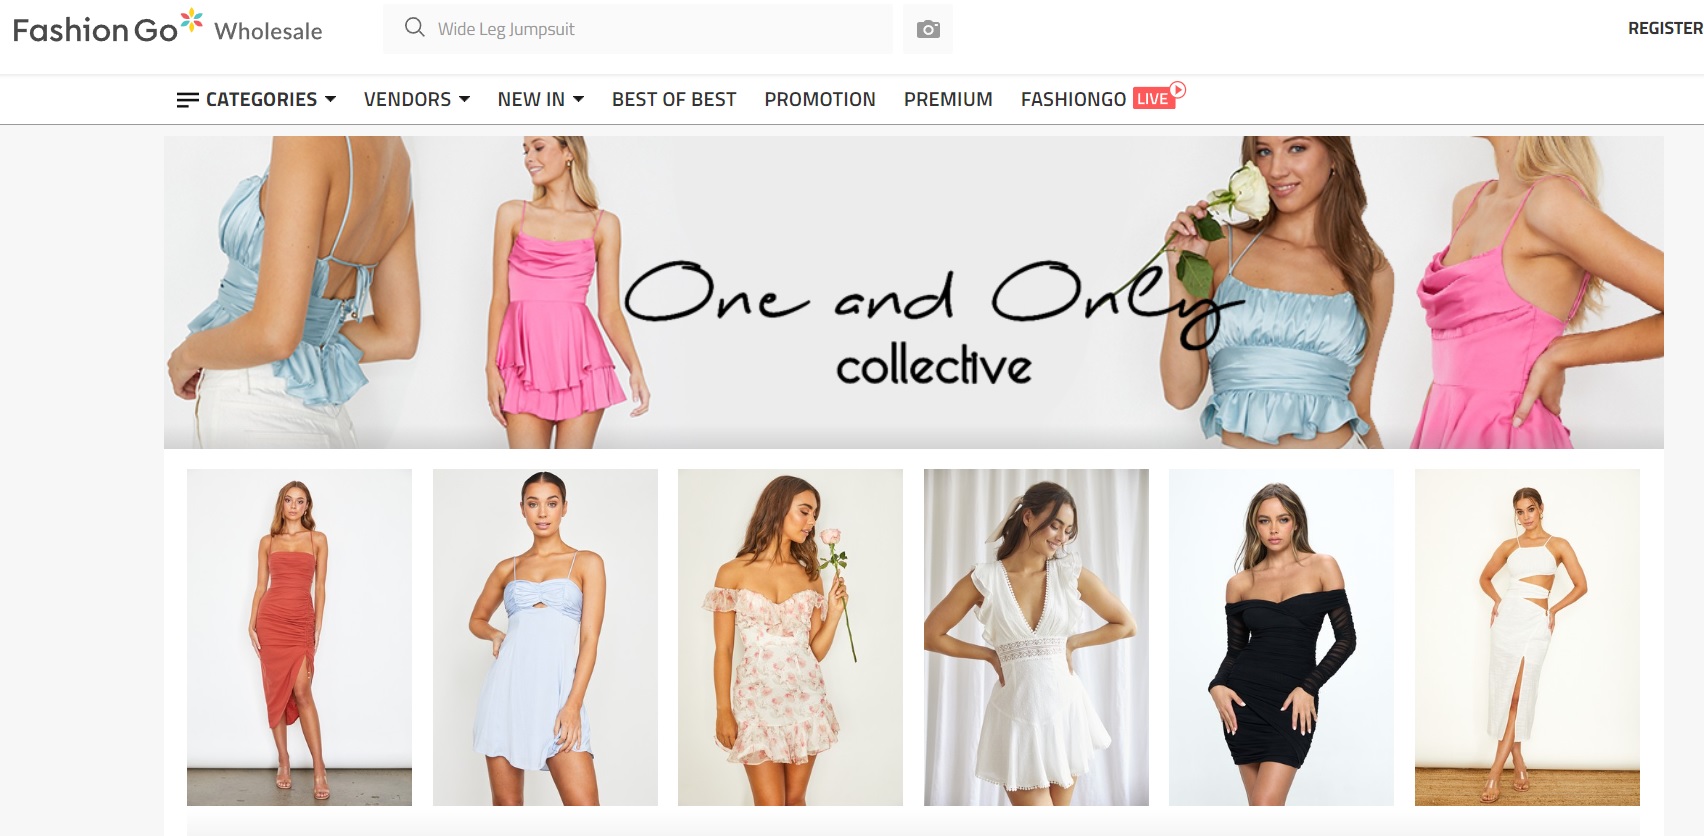 FashionGo marketplace for wholesale clothing vendors